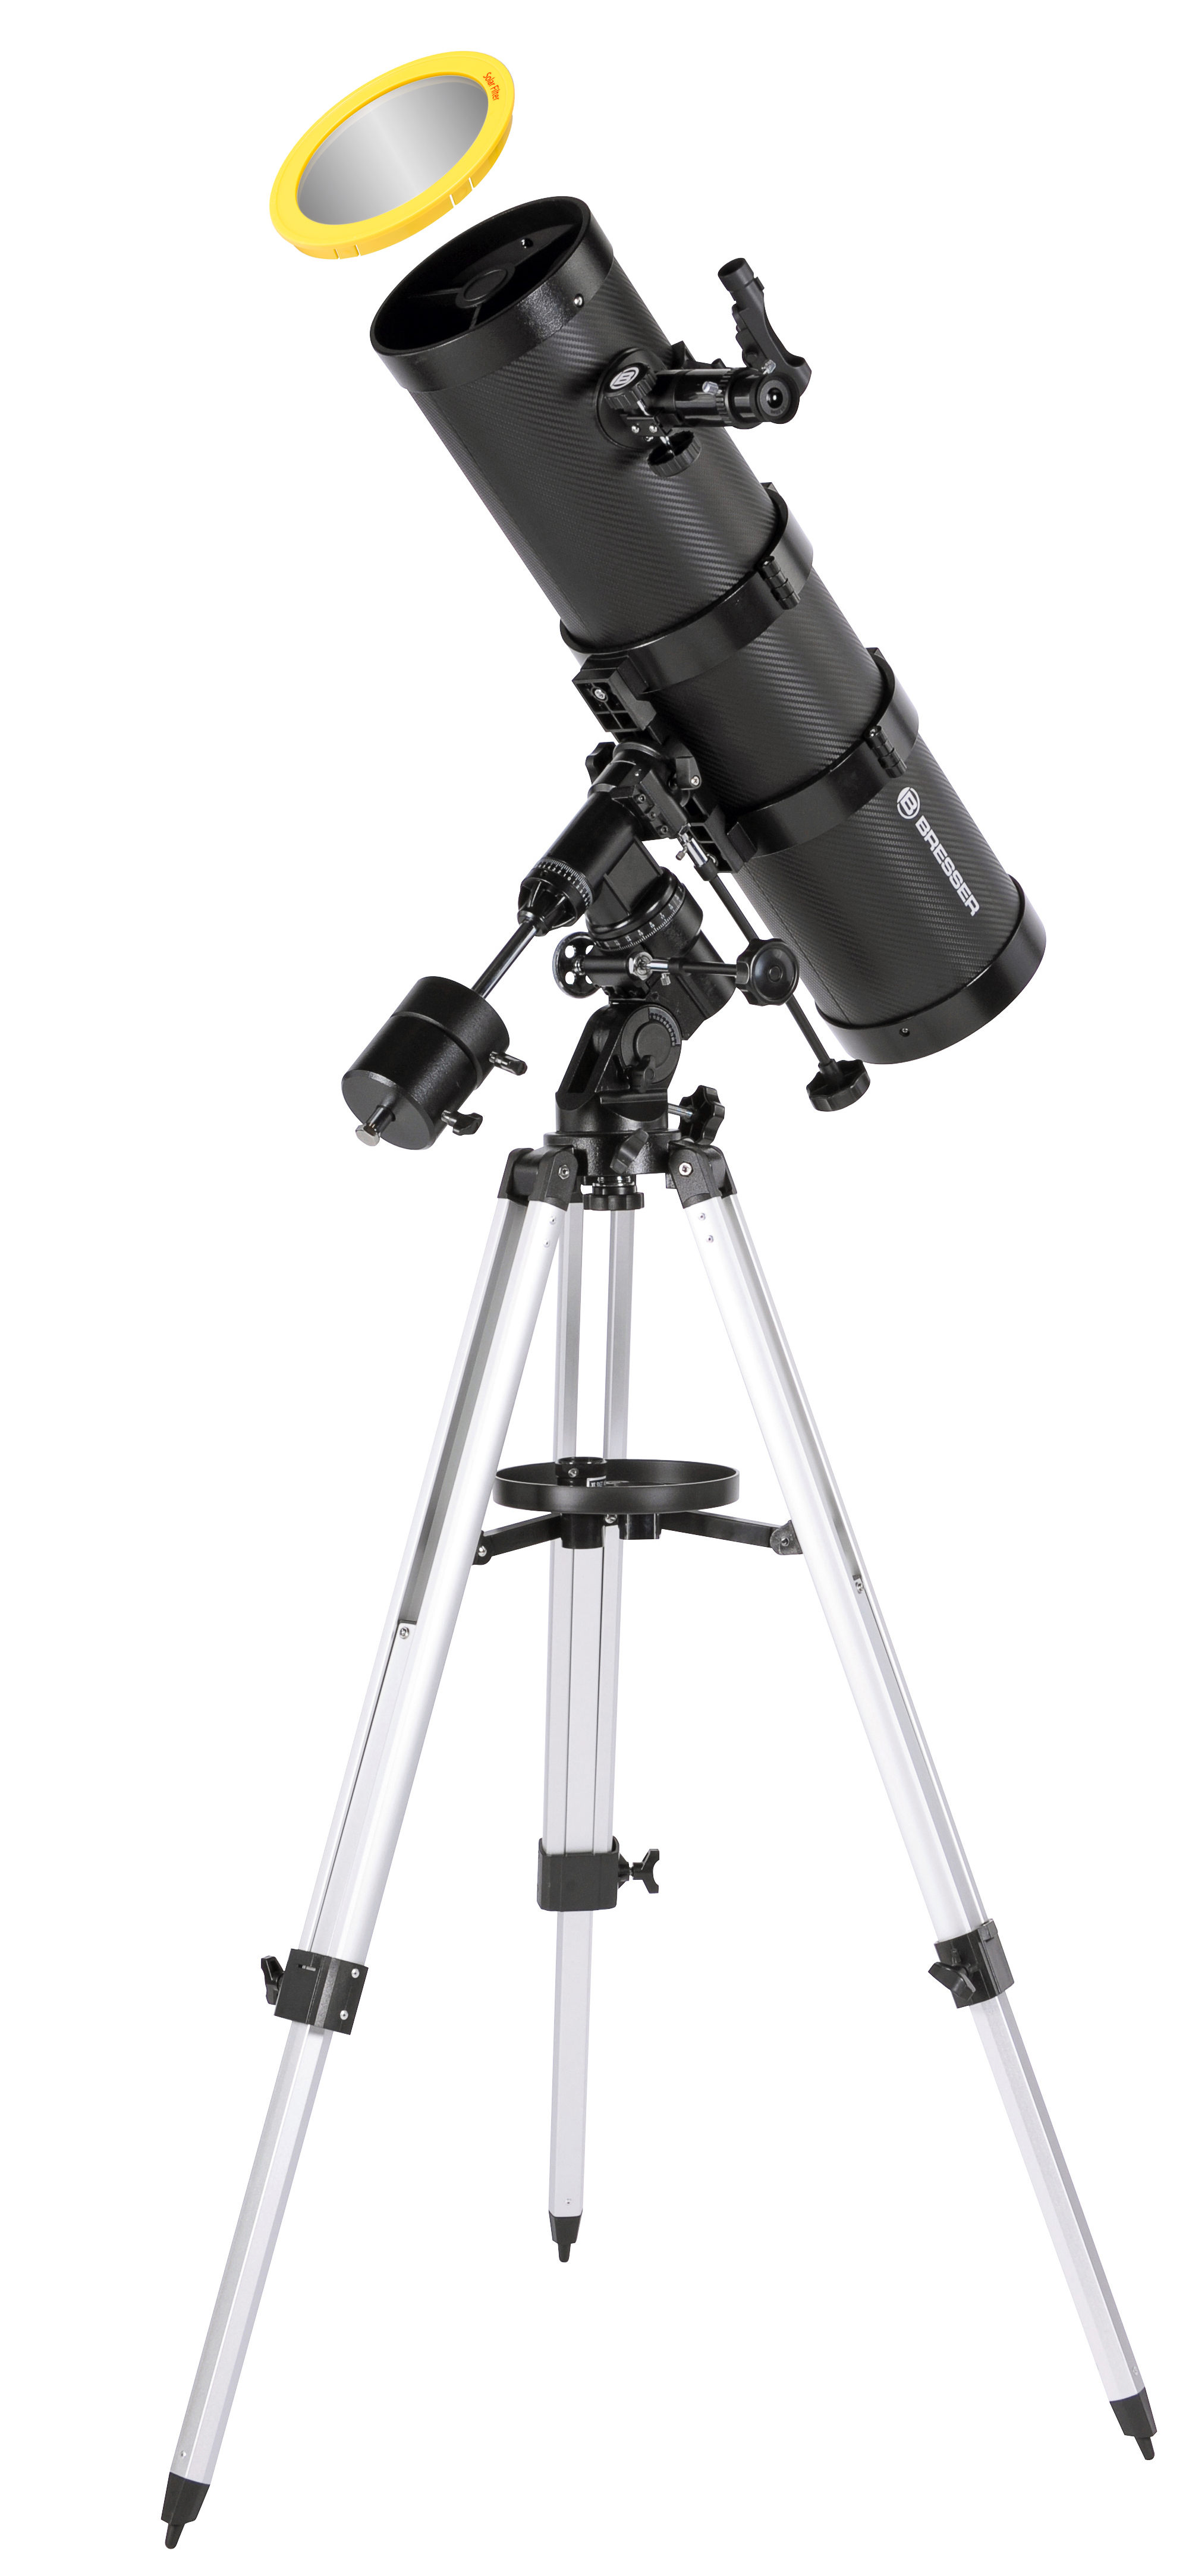  Telescopio riflettore newtoniano BRESSER Pollux EQ3 150/1400 con adattatore per fotocamera smartphone 